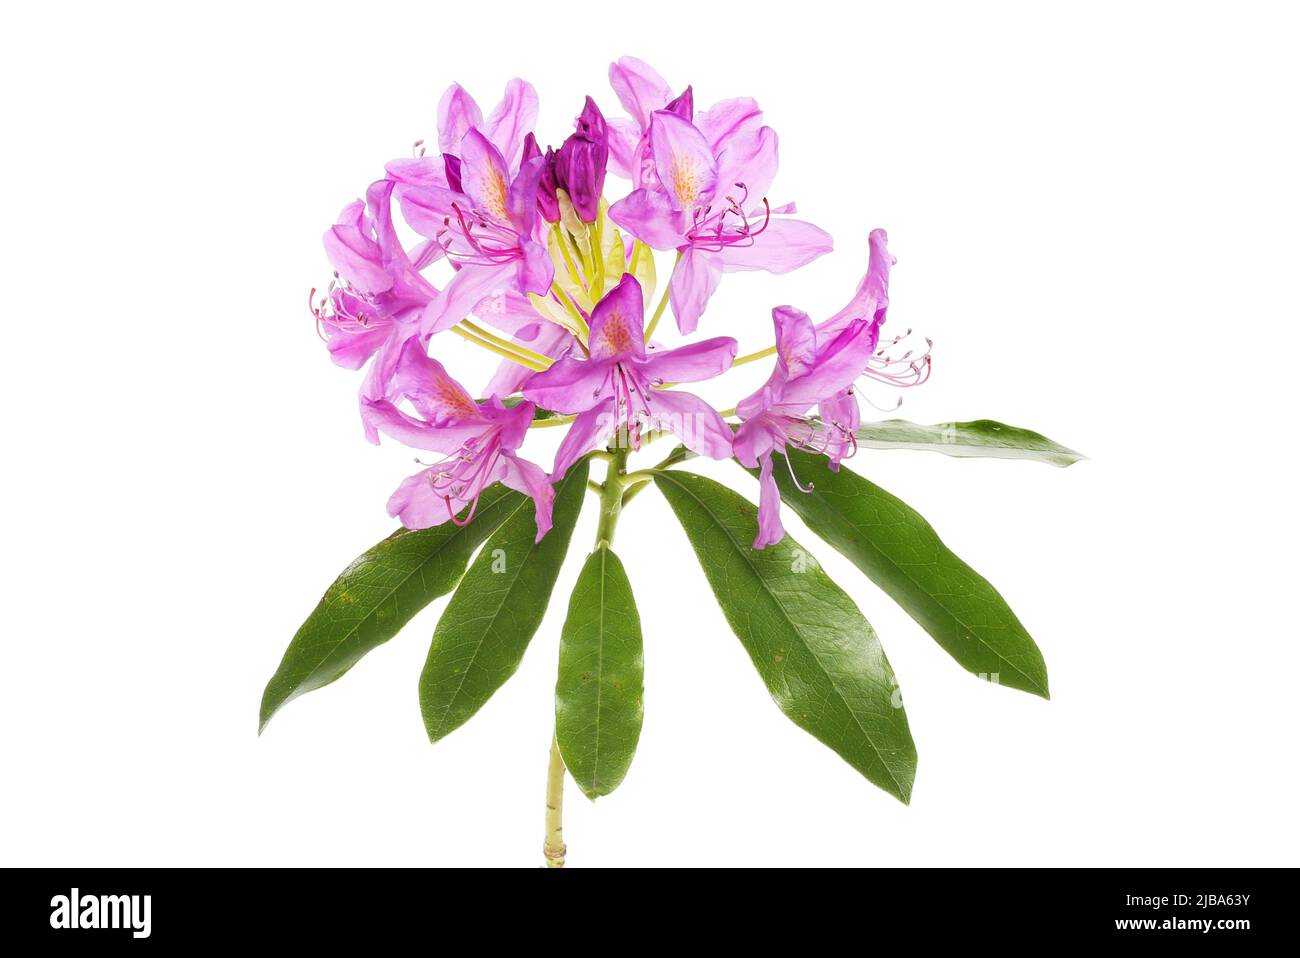 Rhododendron ponticum fiori e fogliame isolata contro bianco Foto Stock